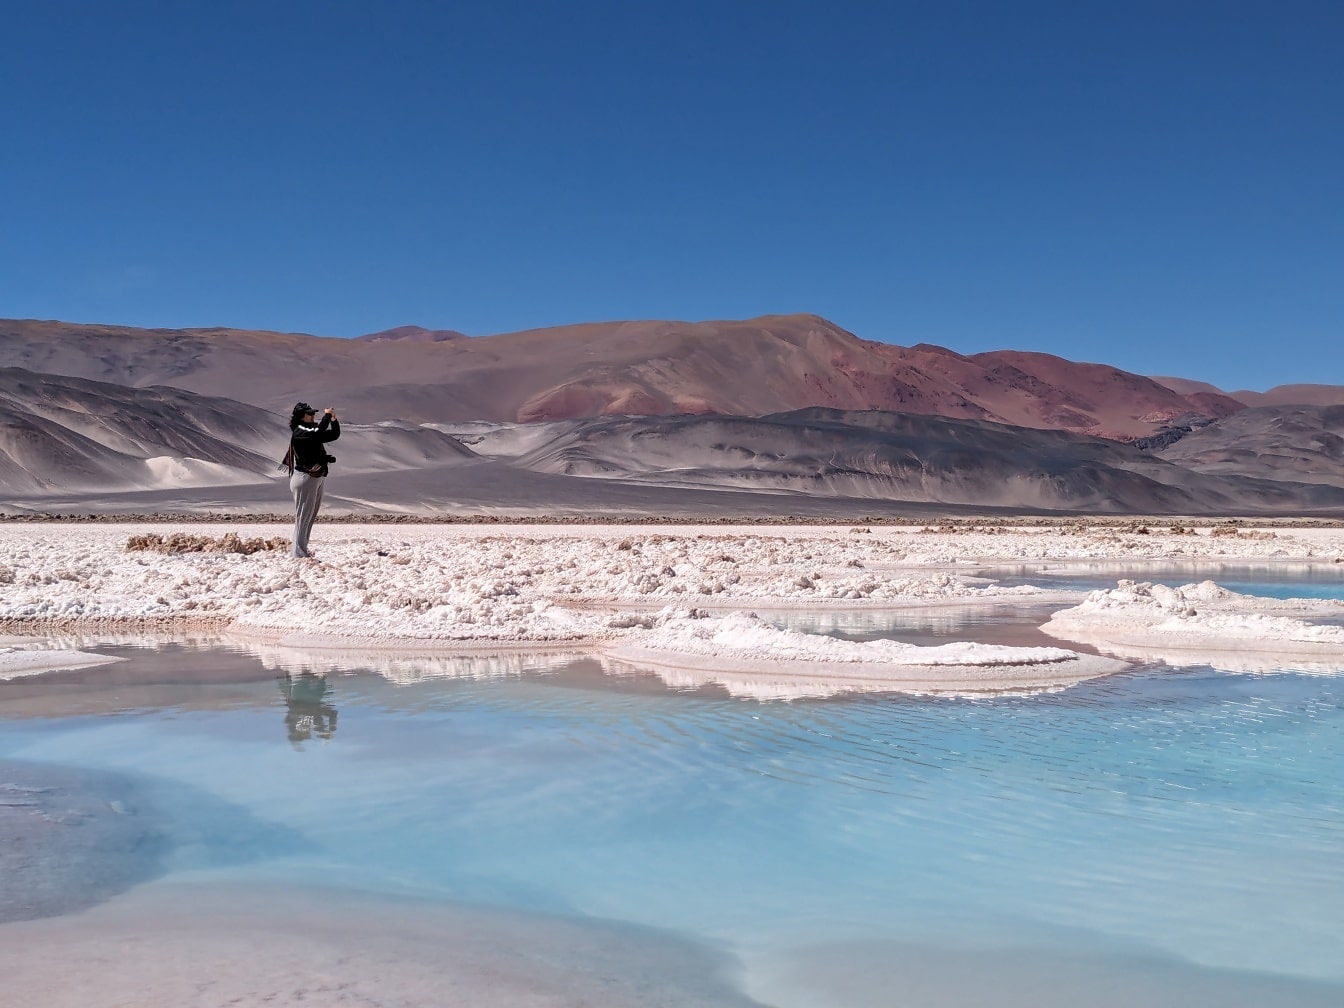 Turista parado en una playa del lago salado del desierto y fotografiando el paisaje del oasis del desierto